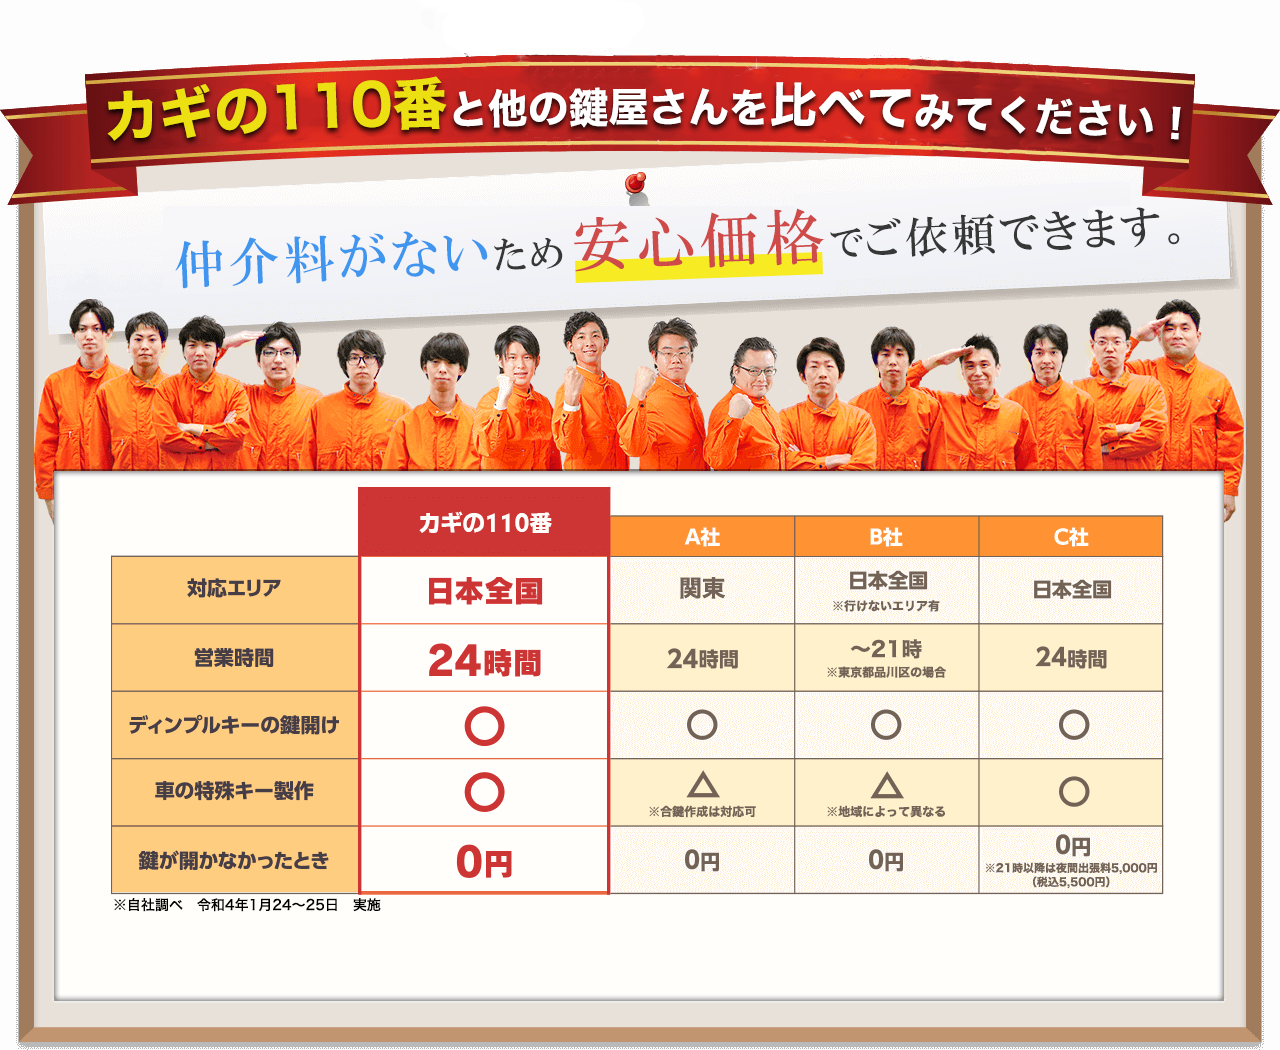 株式会社 カギの110番はご利用シェア日本一の鍵屋です。※楽天リサーチ調べ。